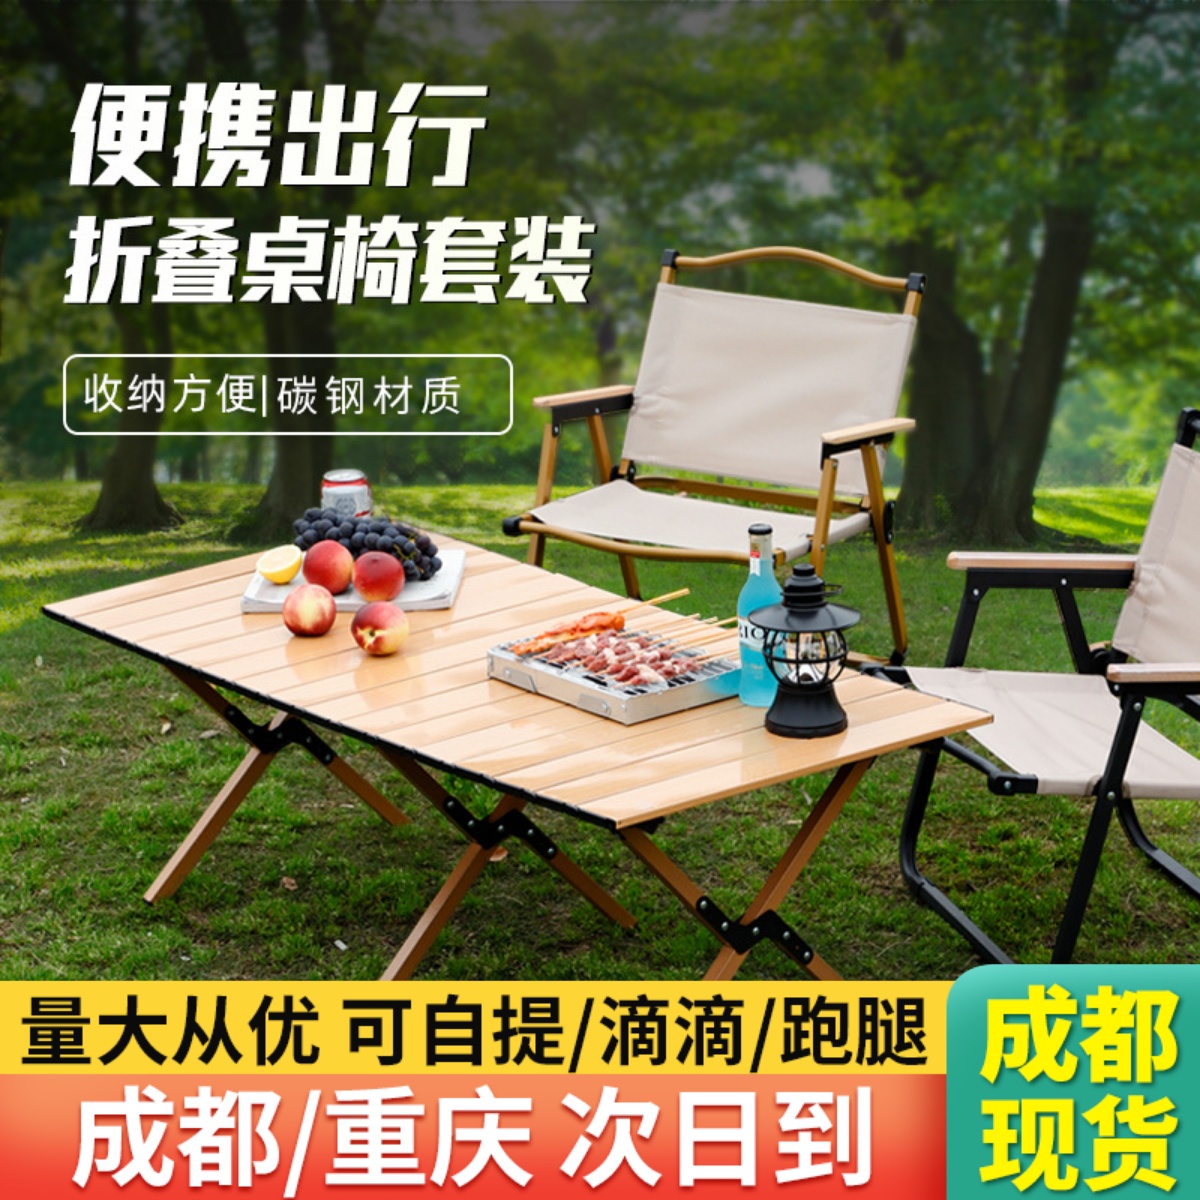 户外折叠桌子便携式露营桌椅套装野营野餐装备用品碳钢合金蛋卷桌